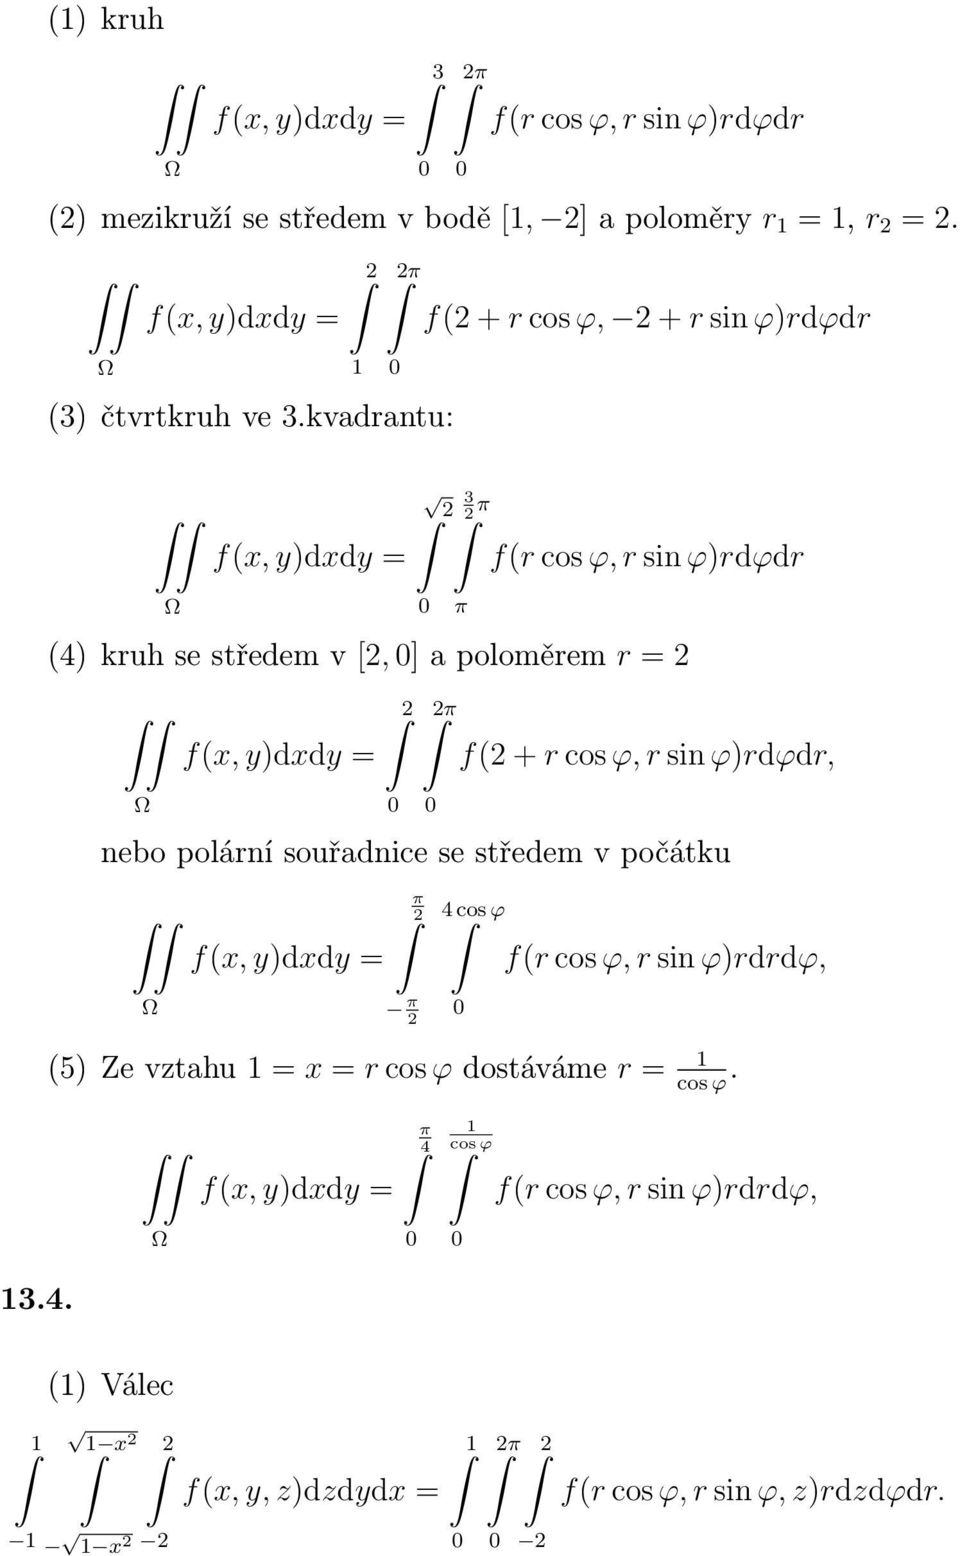 cos ϕ, r sin ϕ)rdϕdr, polární souřadnice se středem v počátku π π 4 cos ϕ f(r cos ϕ, r sin ϕ)rdrdϕ, (5) Ze vztahu = x = r